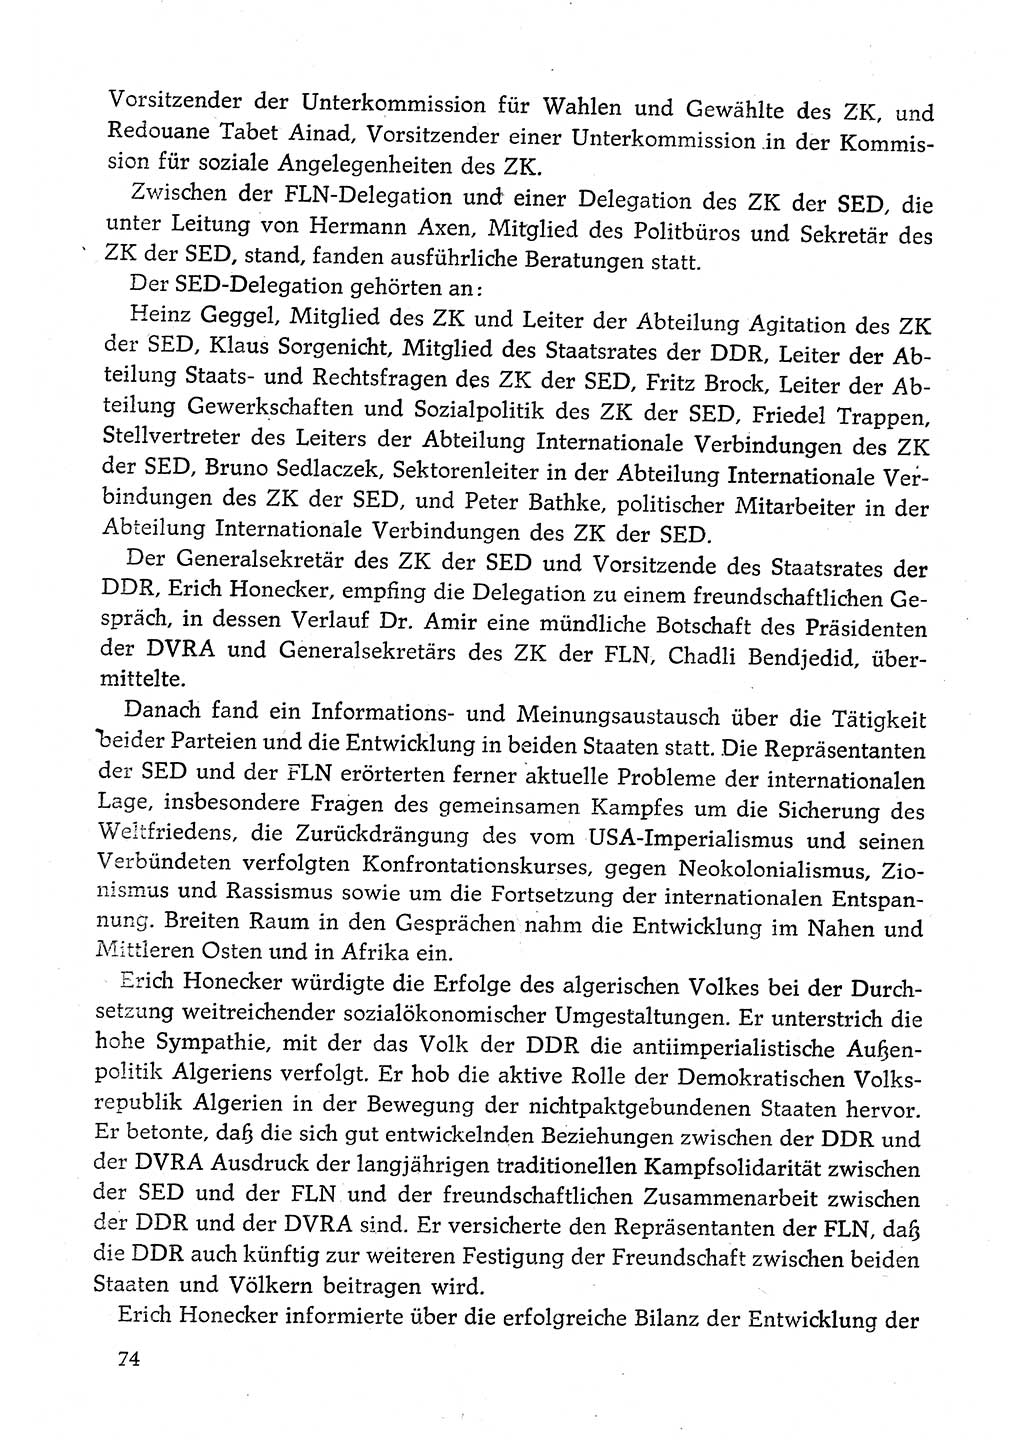 Dokumente der Sozialistischen Einheitspartei Deutschlands (SED) [Deutsche Demokratische Republik (DDR)] 1980-1981, Seite 74 (Dok. SED DDR 1980-1981, S. 74)